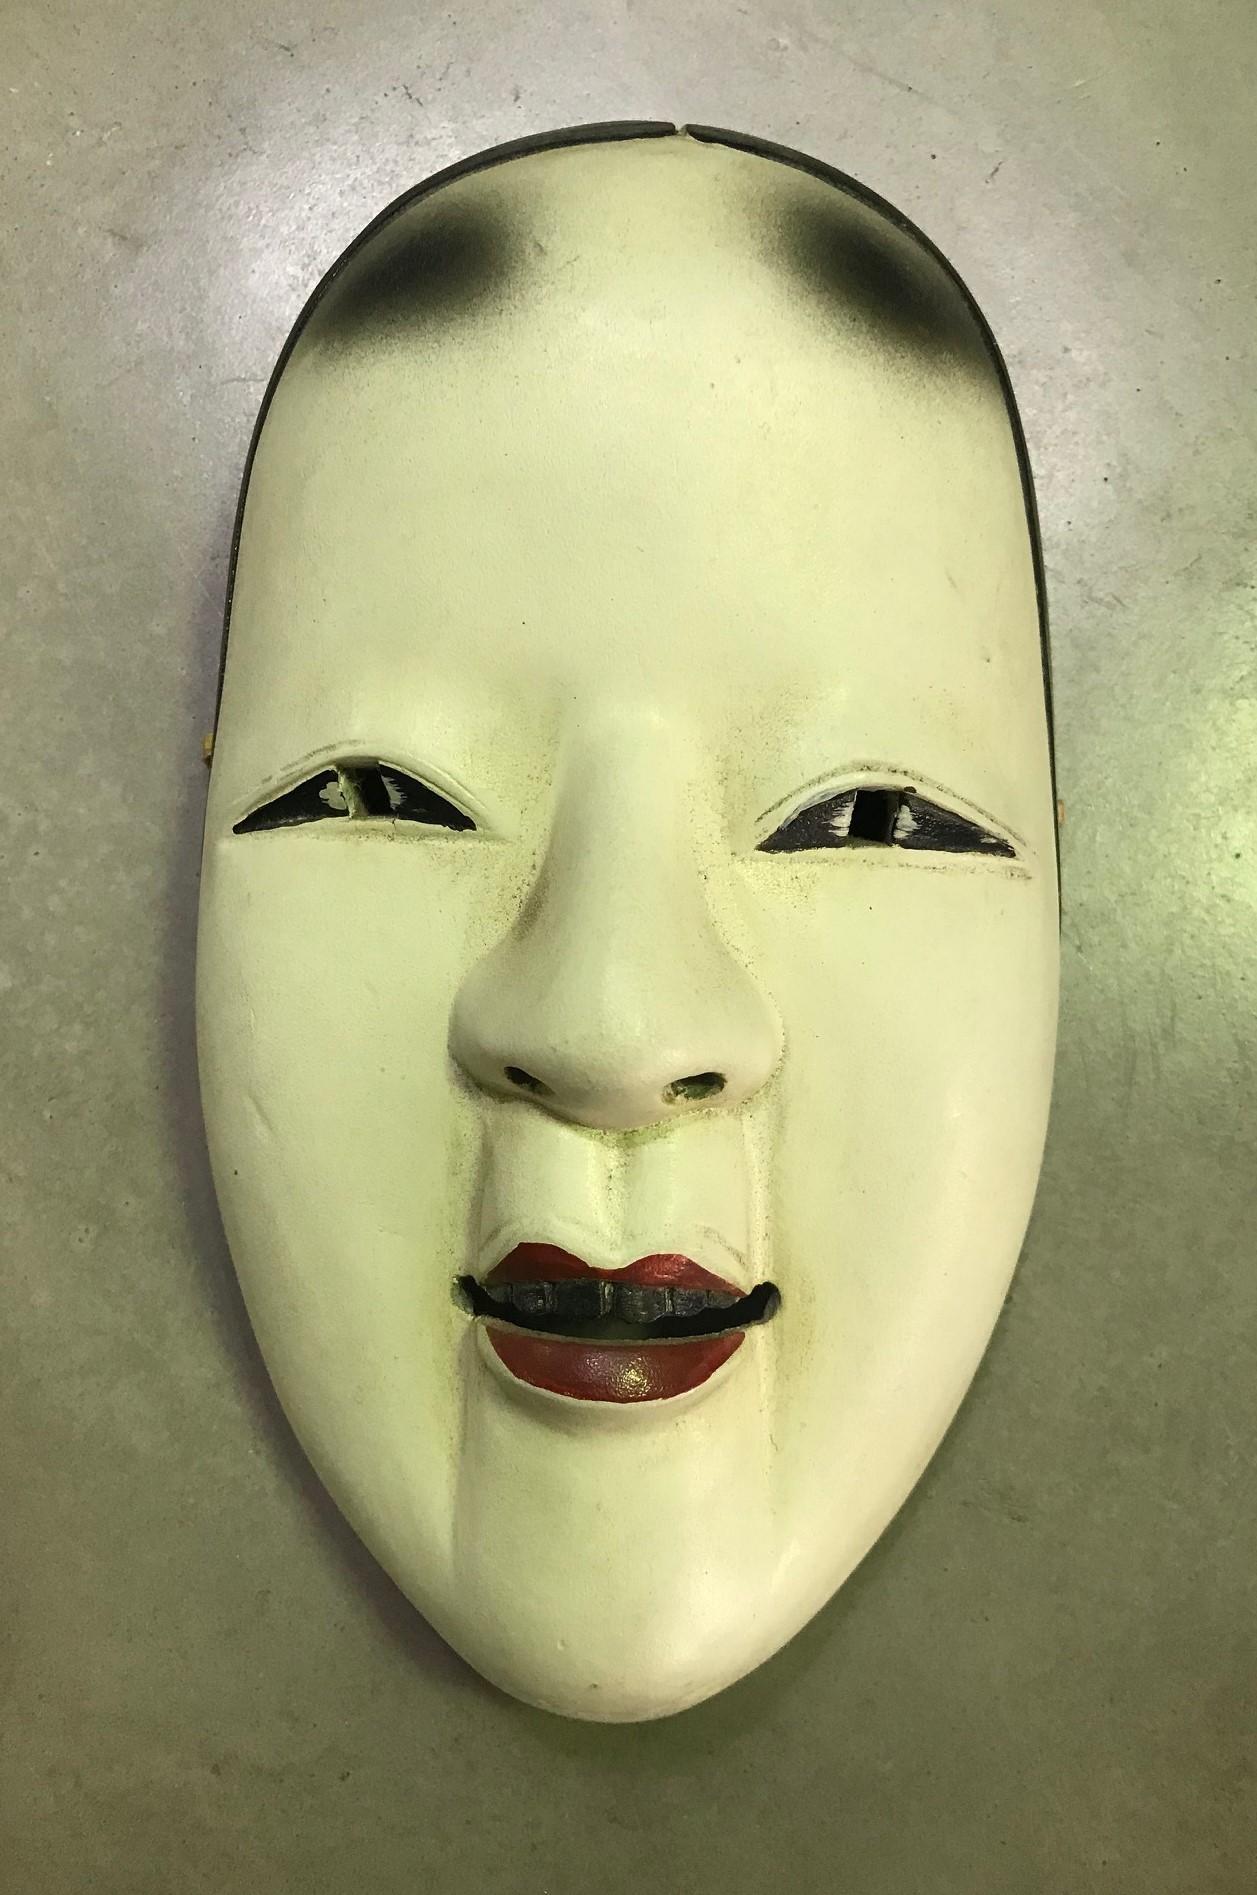 Eine wunderschöne, wunderbar gearbeitete, verführerische Maske, die für das japanische Noh-Theater hergestellt wurde.

Diese Maske ist handgefertigt und aus Naturholz geschnitzt.

Ko-omote heißt übersetzt 